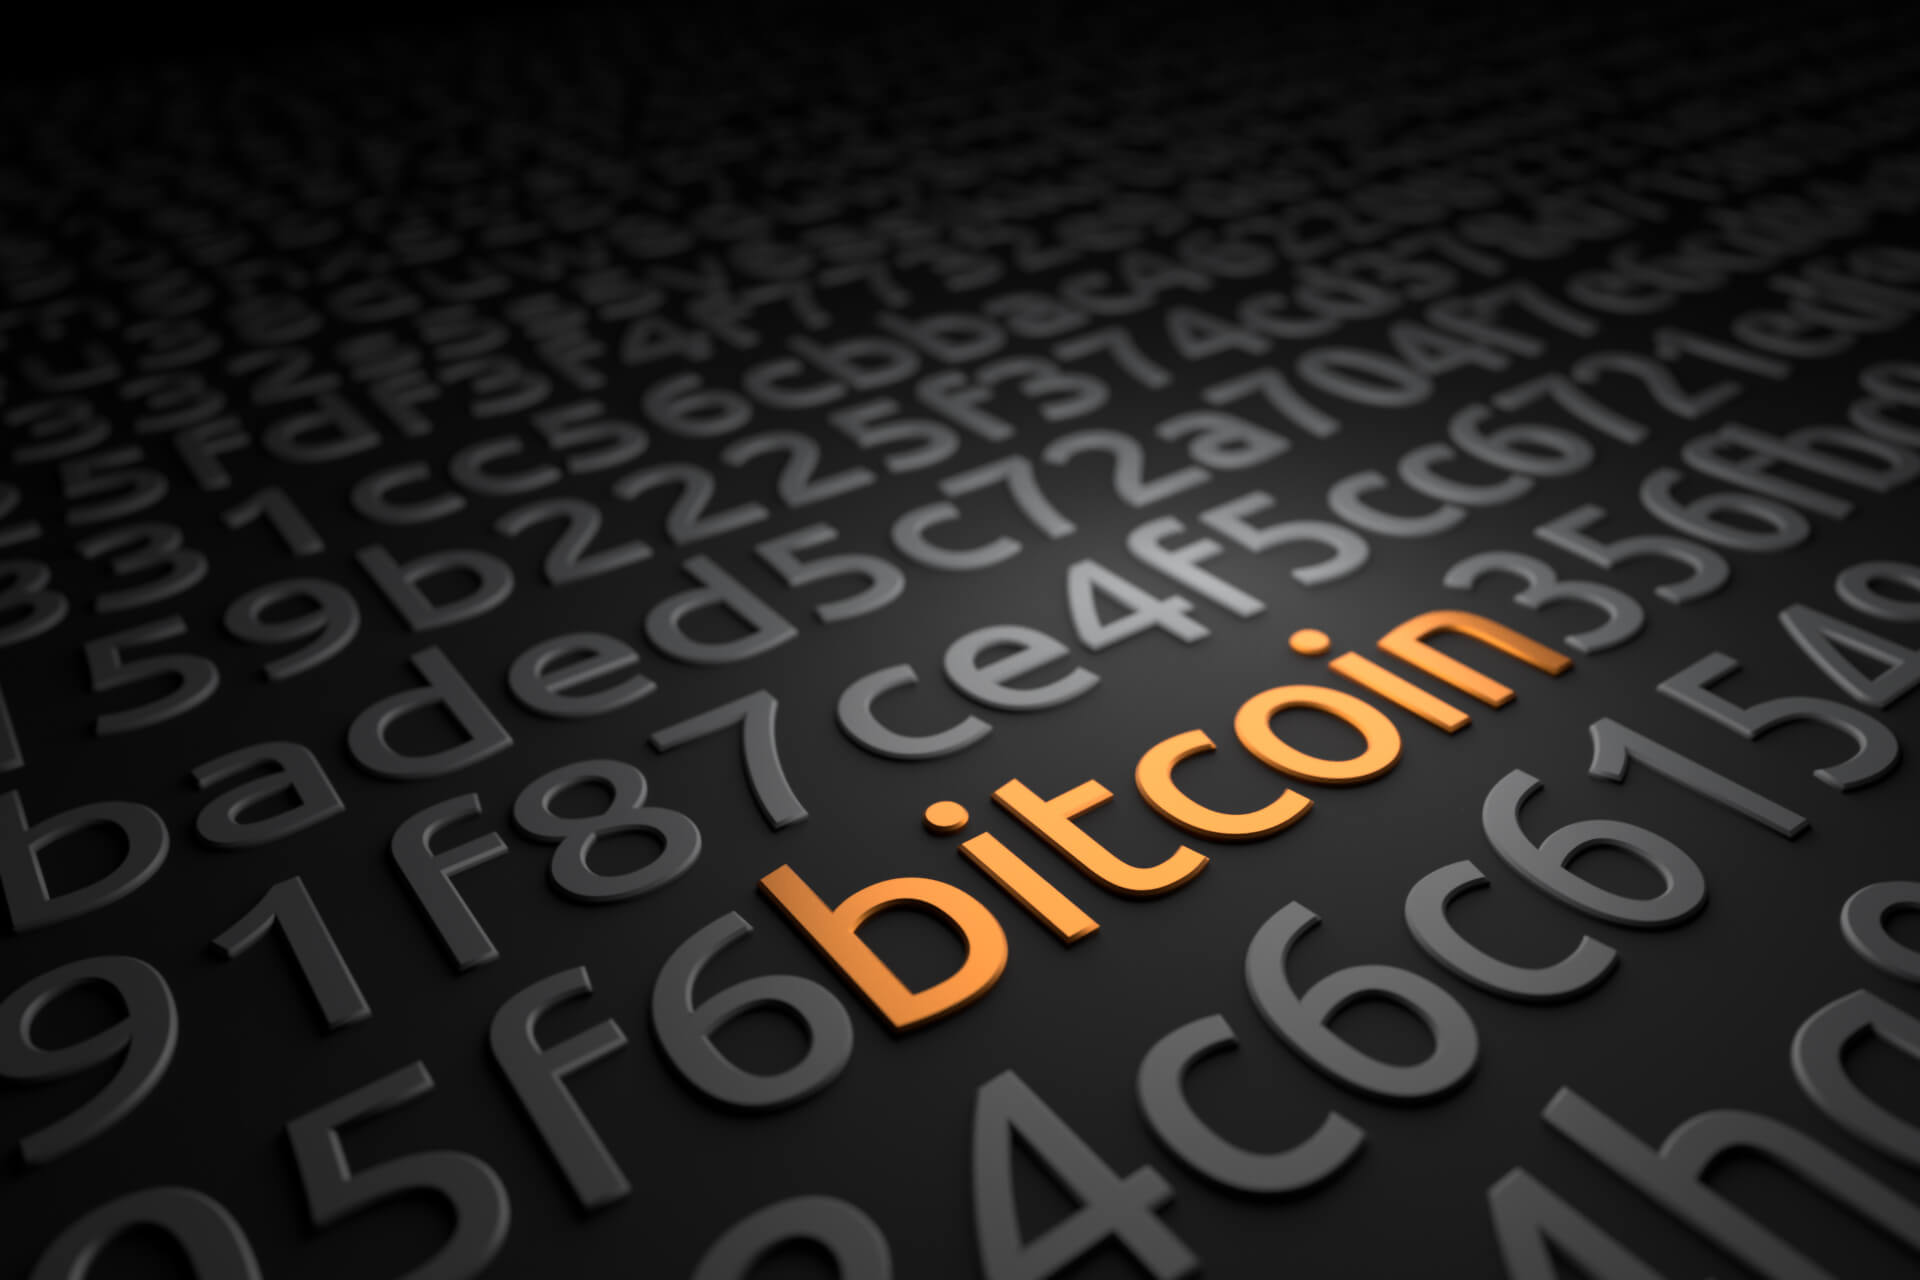 O preço atual de um Bitcoin é de US$ 27.077 com um volume de negociação nas últimas 24 horas de US$ 13.9 Bilhões